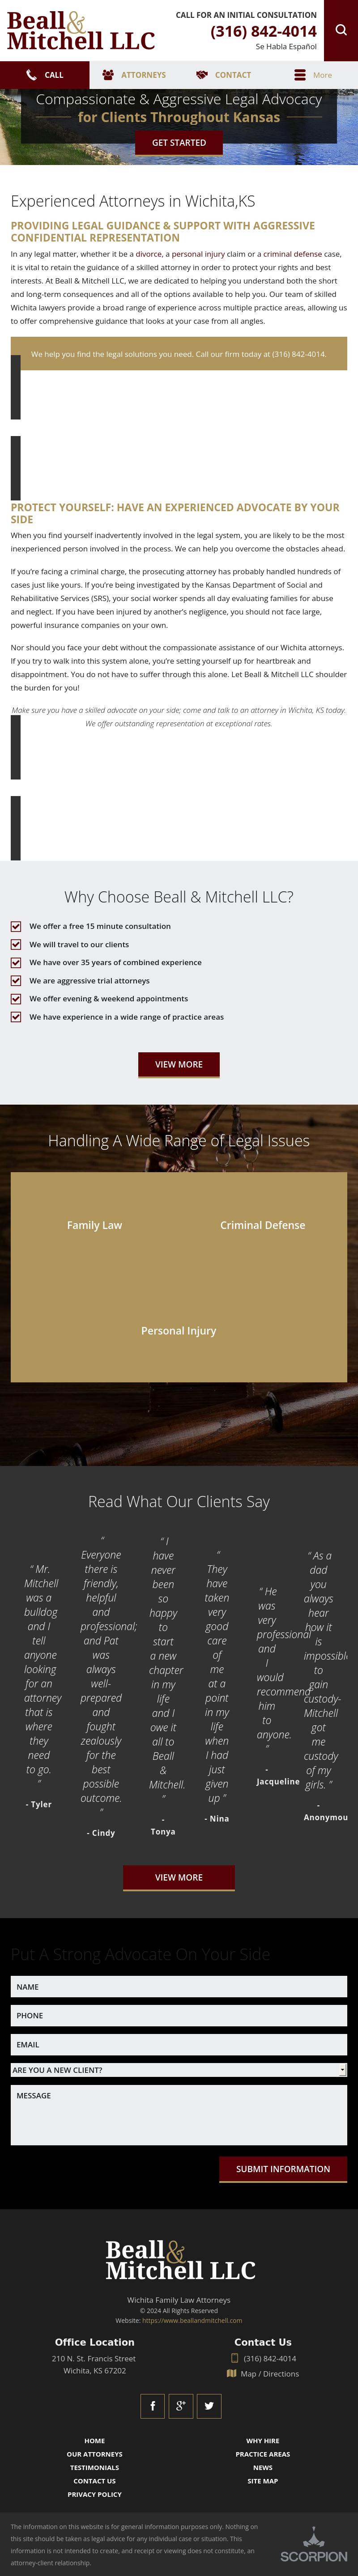 Beall & Mitchell, LLC - Wichita KS Lawyers